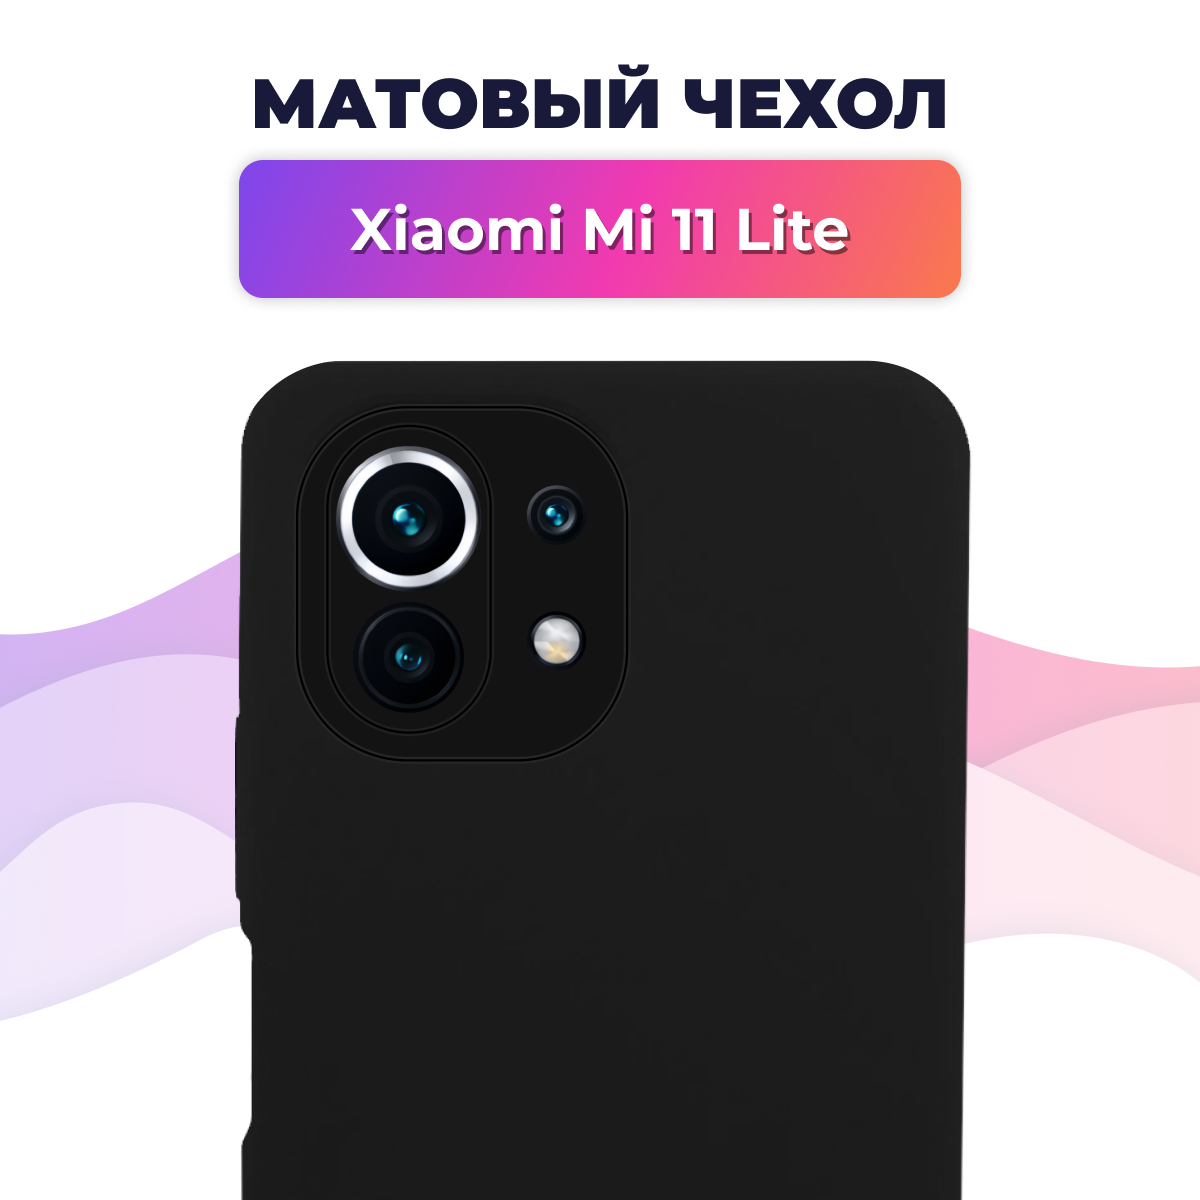 Матовый силиконовый чехол на телефон Xiaomi Mi 11 Lite / Накладка Rosin для смартфона Сяоми Ми 11 Лайт / Тонкий бампер Soft Touch, Черный